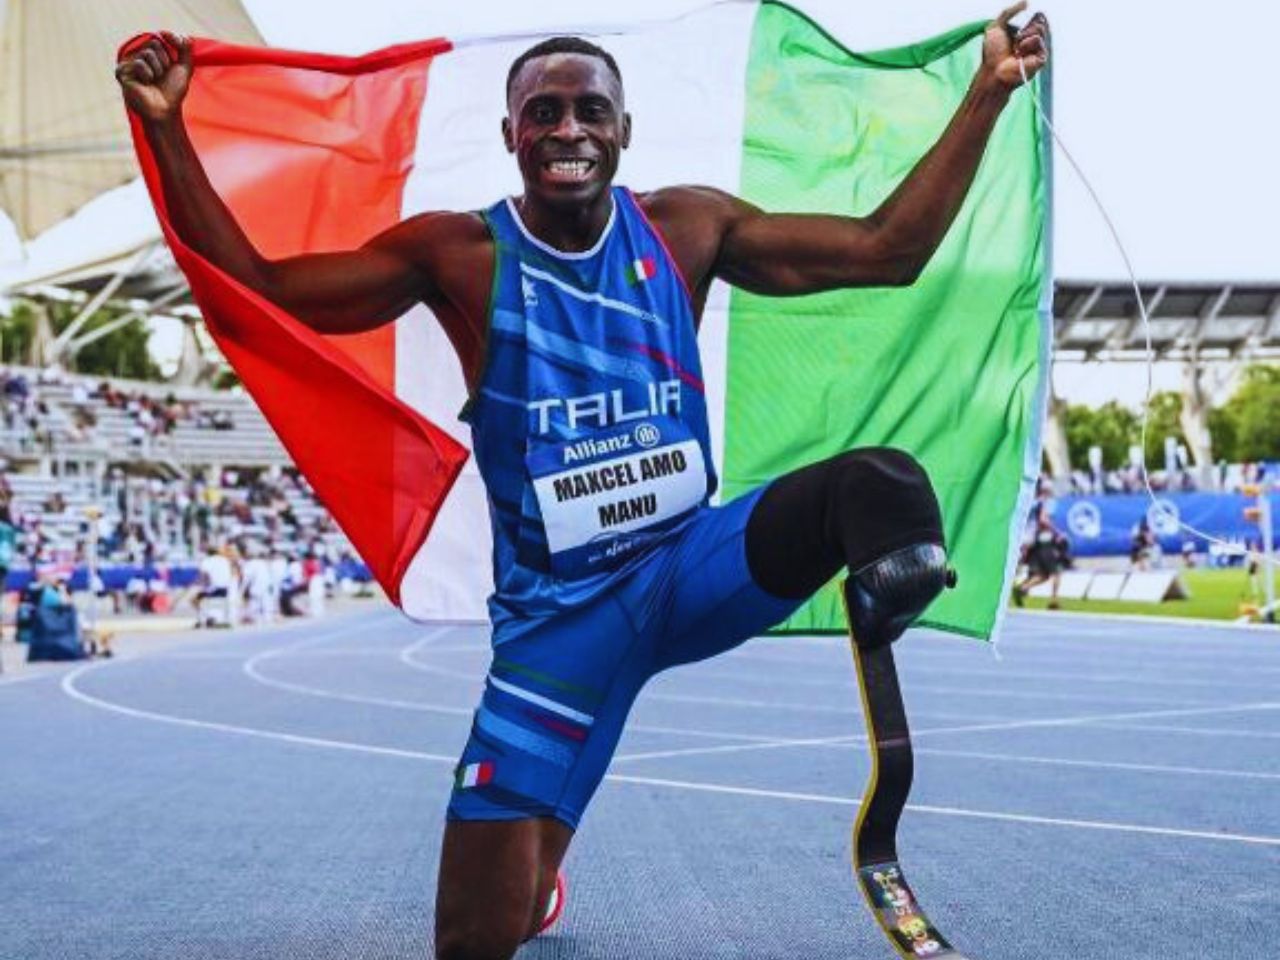 Mondiali di atletica, l’Italia paralimpica conquista il primo oro con Maxcel Amo